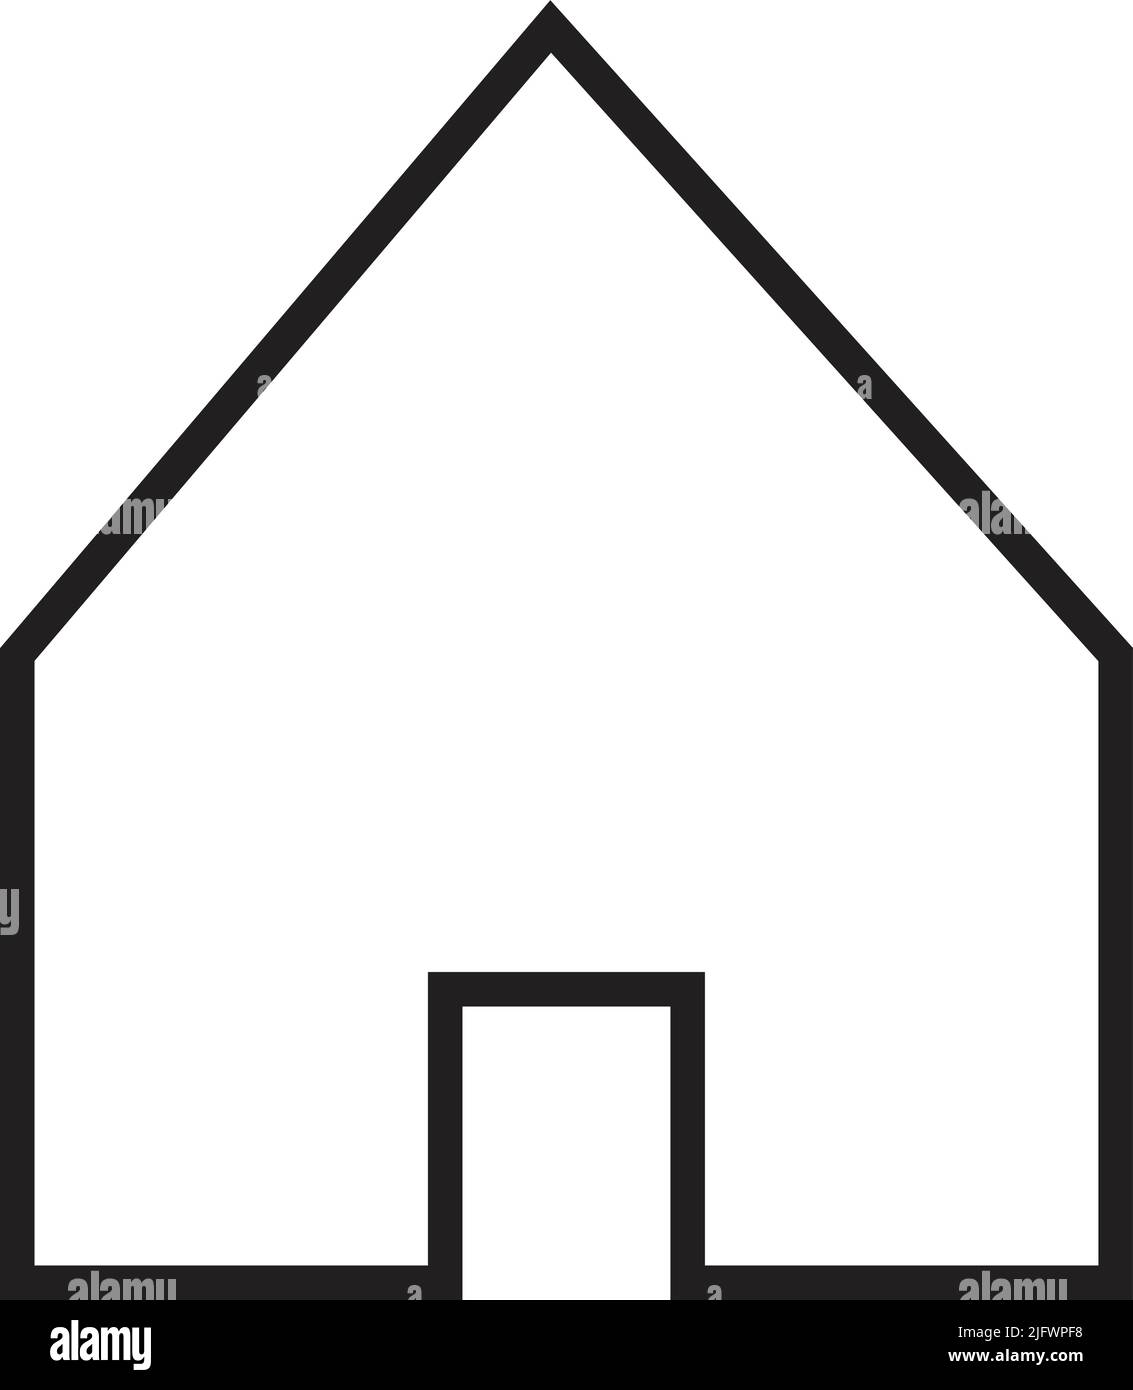 Icône de maison, vecteur, entreprise de construction, assurance, élément de conception de logotype de maison intelligente. Forme noire classique simple Illustration de Vecteur